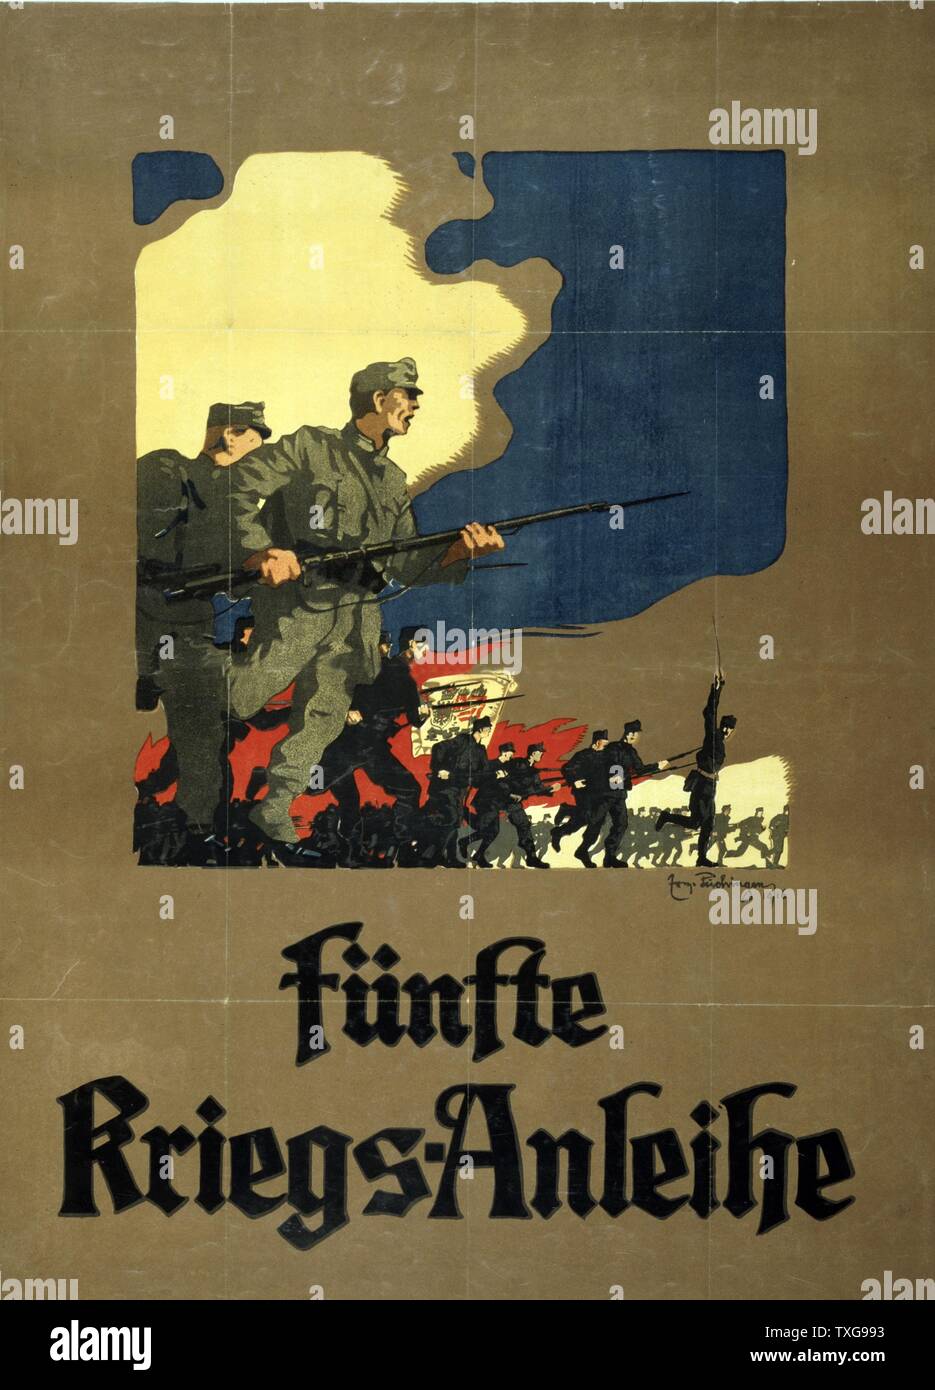 La Première Guerre mondiale : Kriegs-Anleihe ein affiche autrichienne pour la question de l'emprunt de guerre pour financer les hostilités Banque D'Images